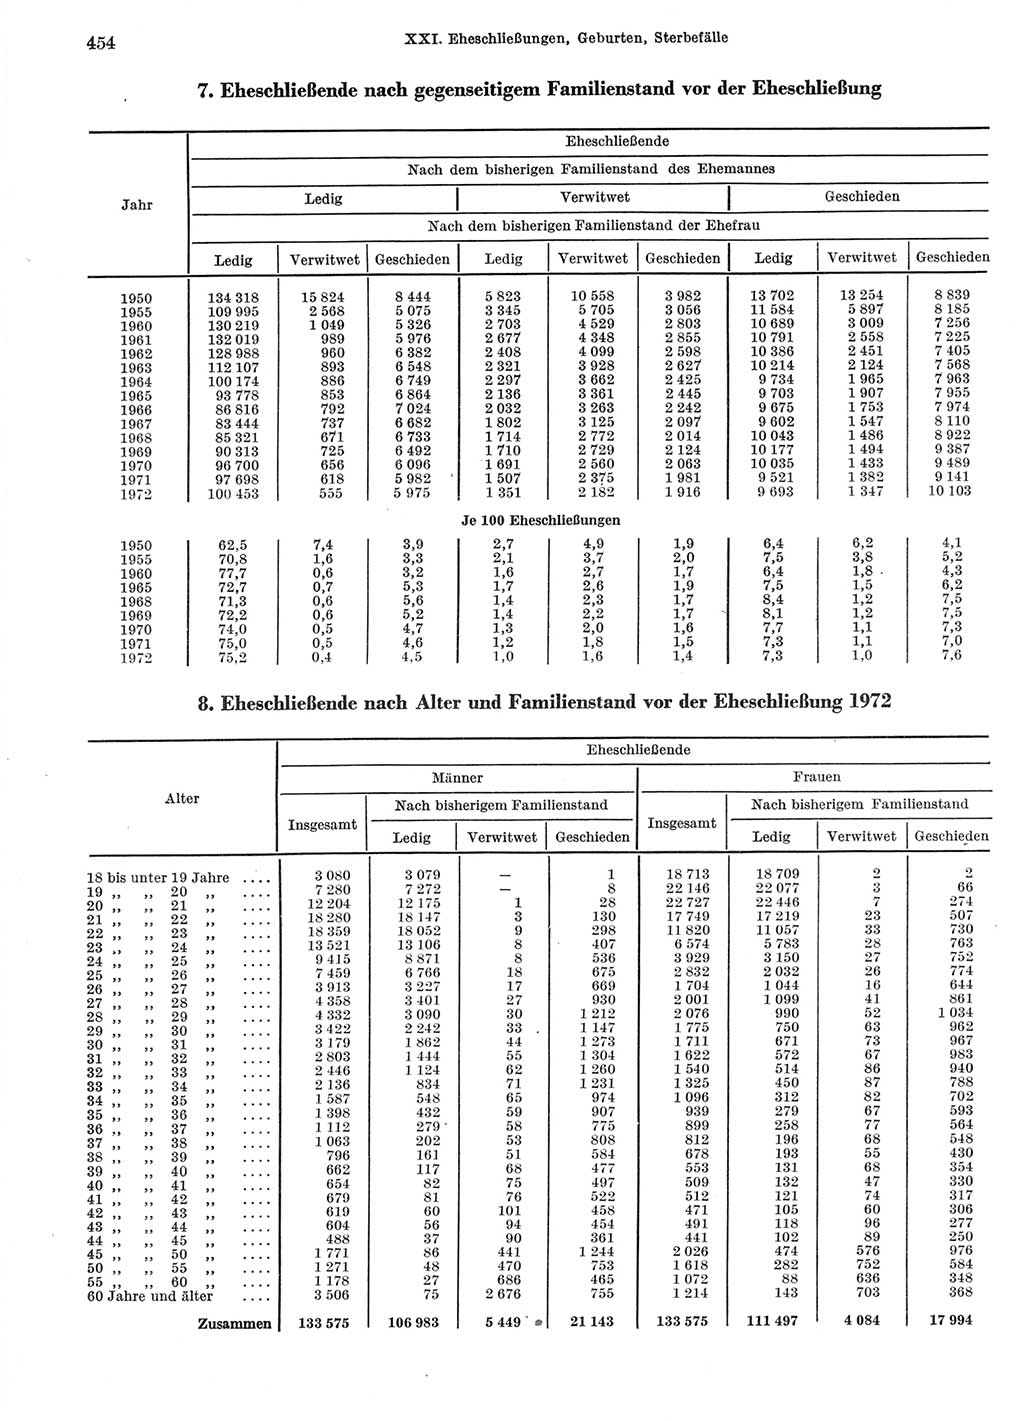 Statistisches Jahrbuch der Deutschen Demokratischen Republik (DDR) 1974, Seite 454 (Stat. Jb. DDR 1974, S. 454)